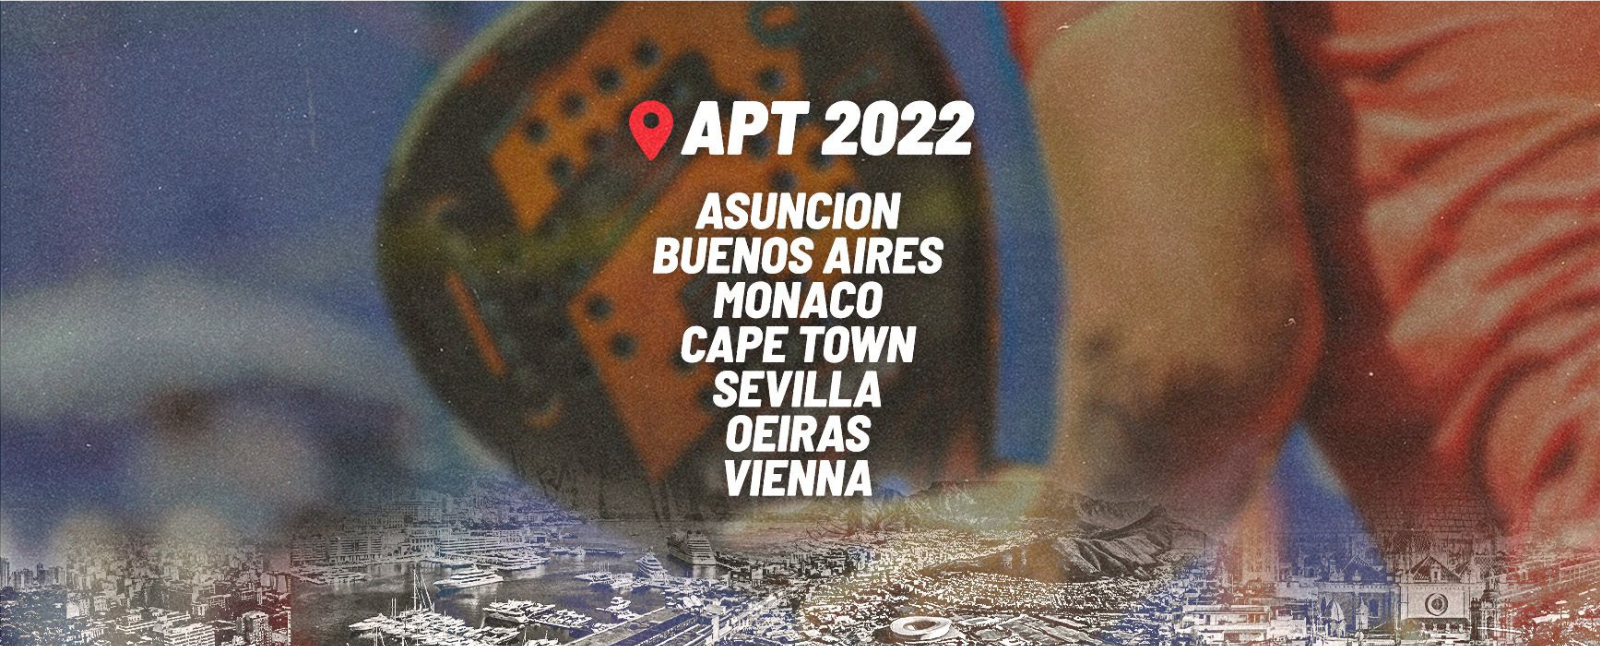 Der spektakuläre Zeitplan der APT Padel Tour für 2022